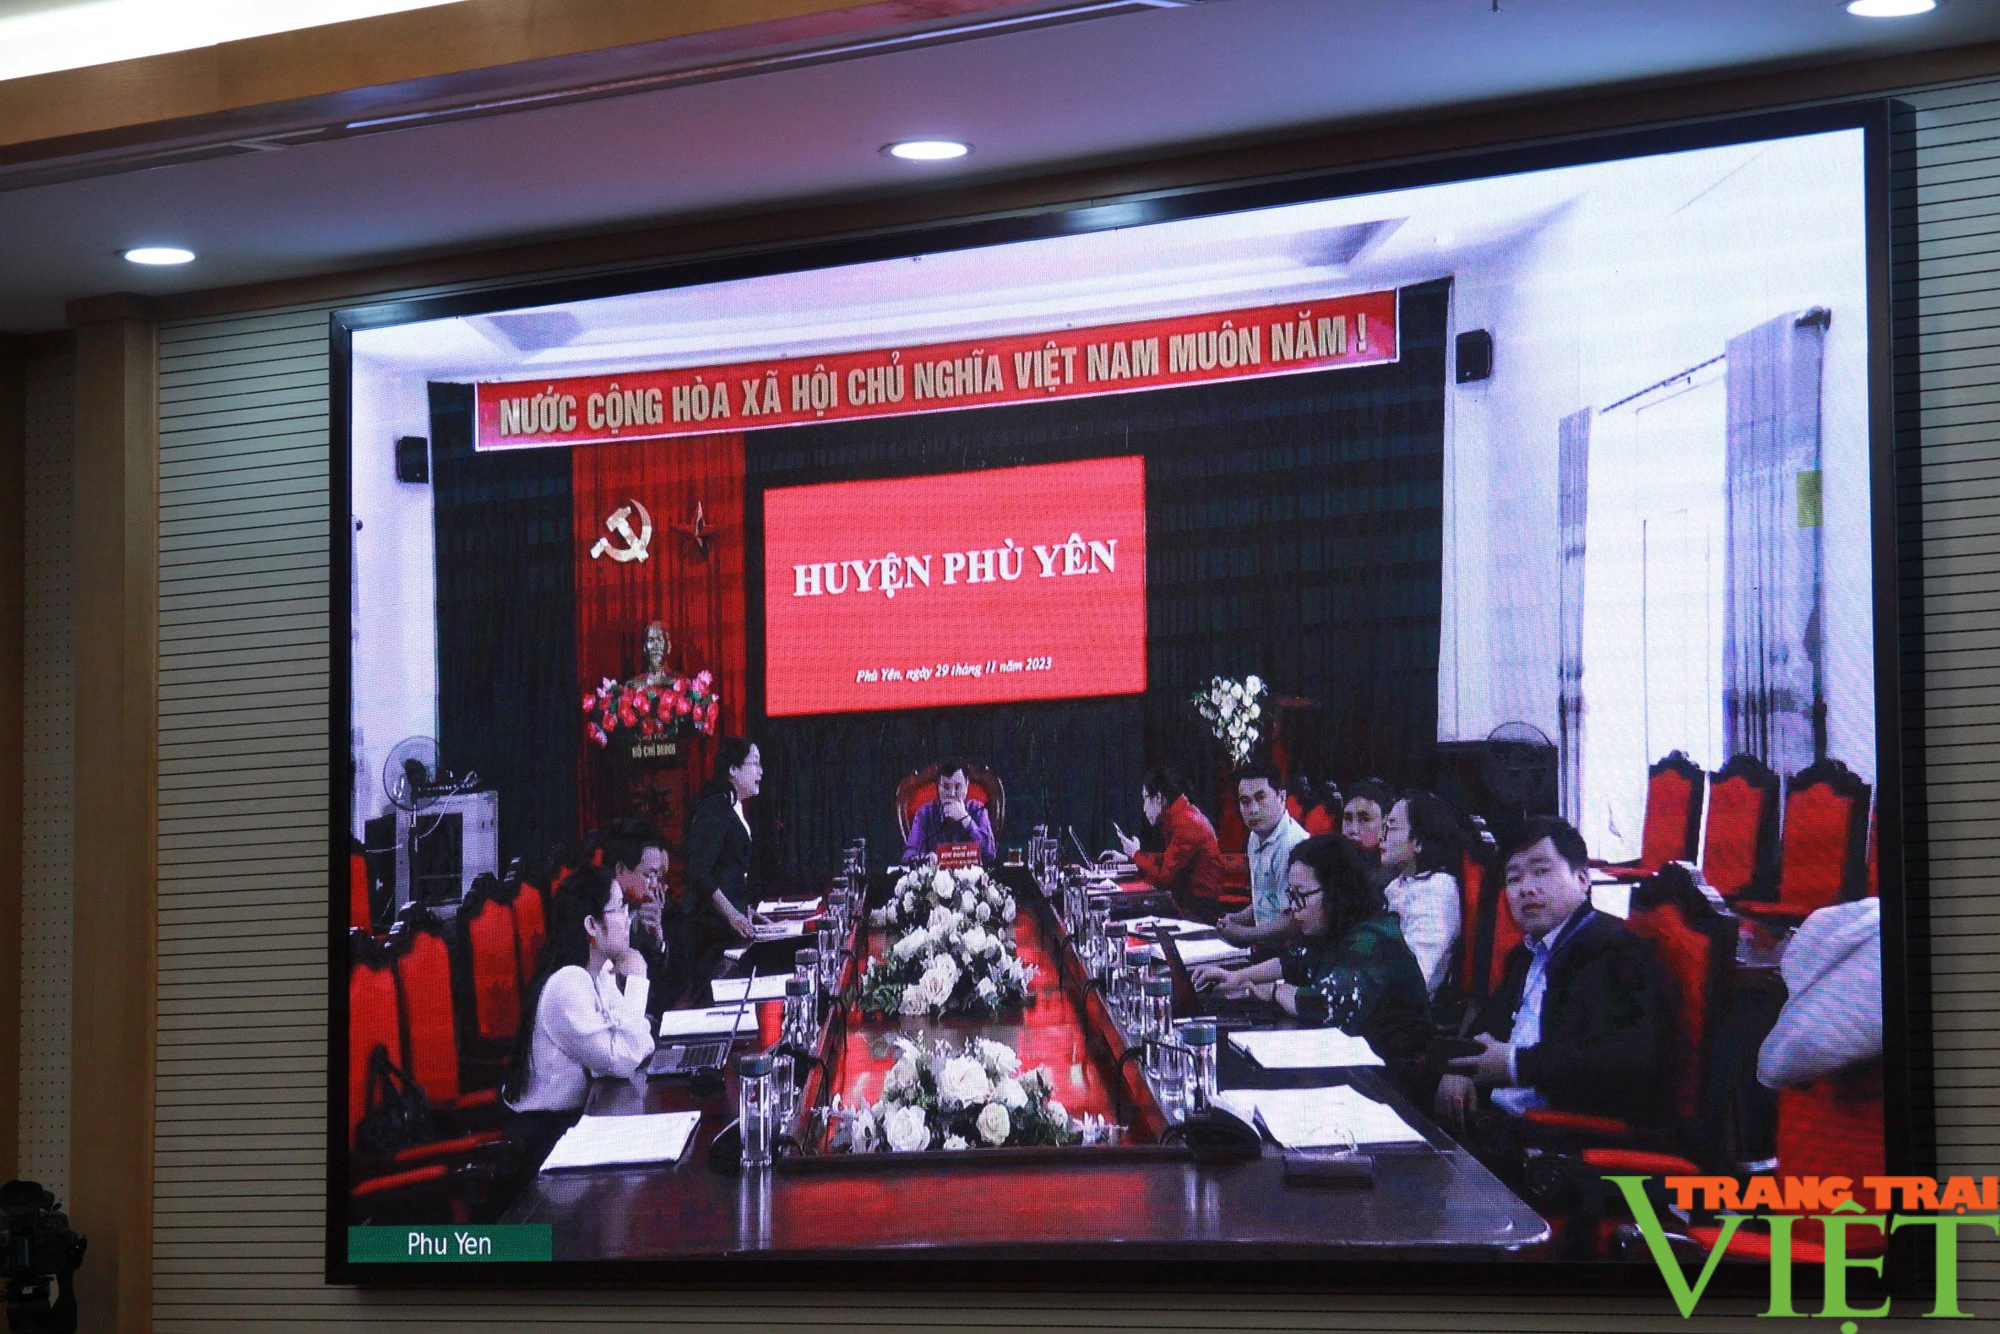 Chủ tịch UBND tỉnh Sơn La: Nông dân phải sống được bằng nghề được đào tạo  - Ảnh 3.